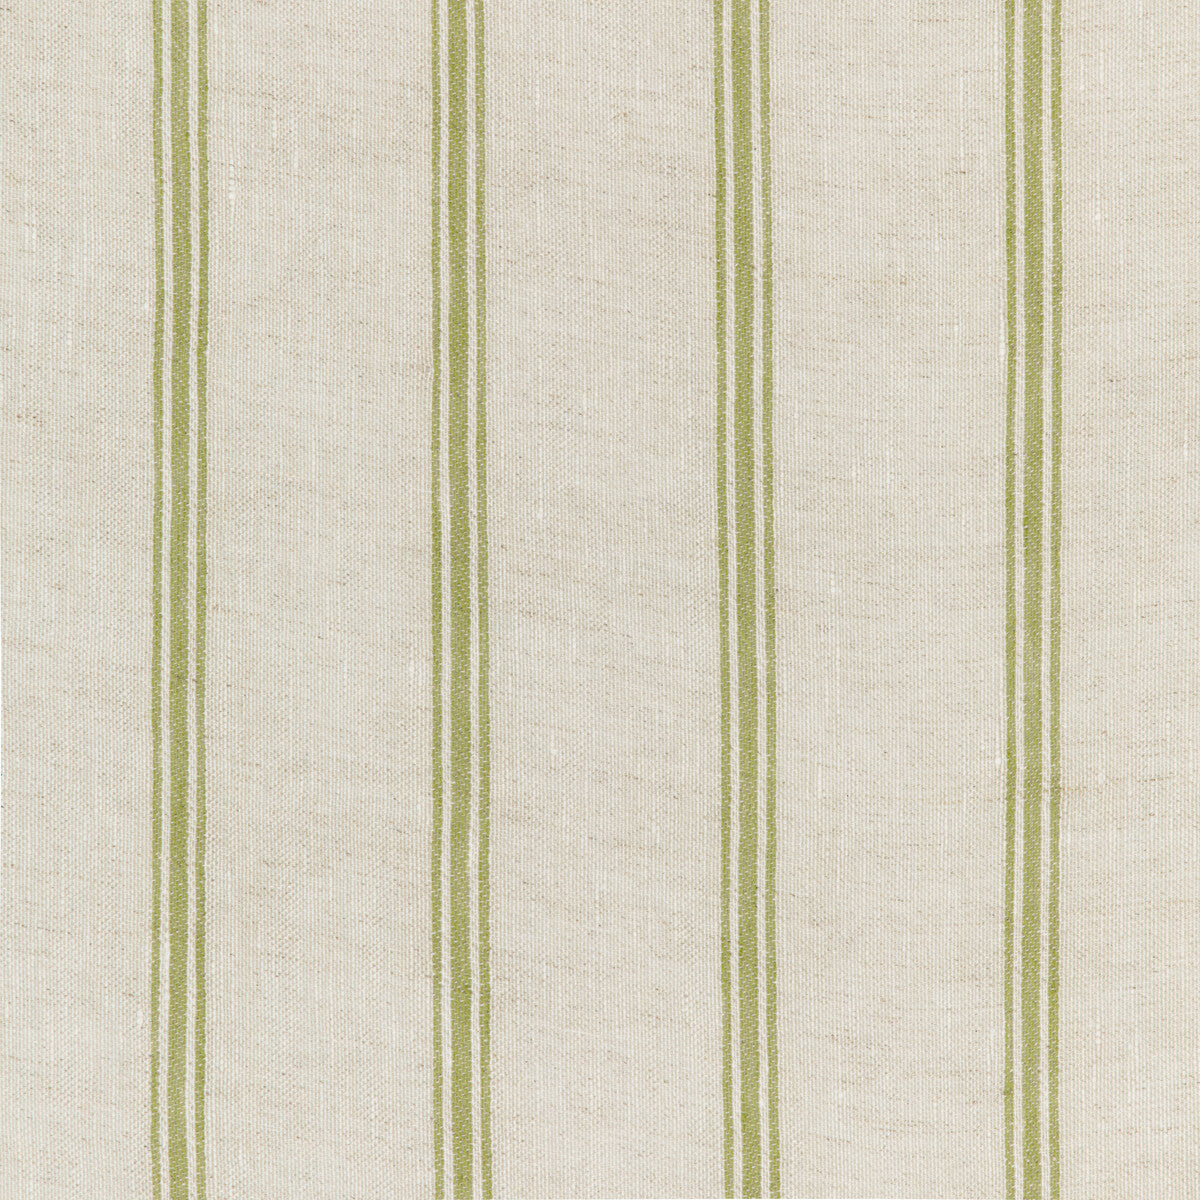 Kravet Design fabric in 4848-316 color - pattern 4848.316.0 - by Kravet Design